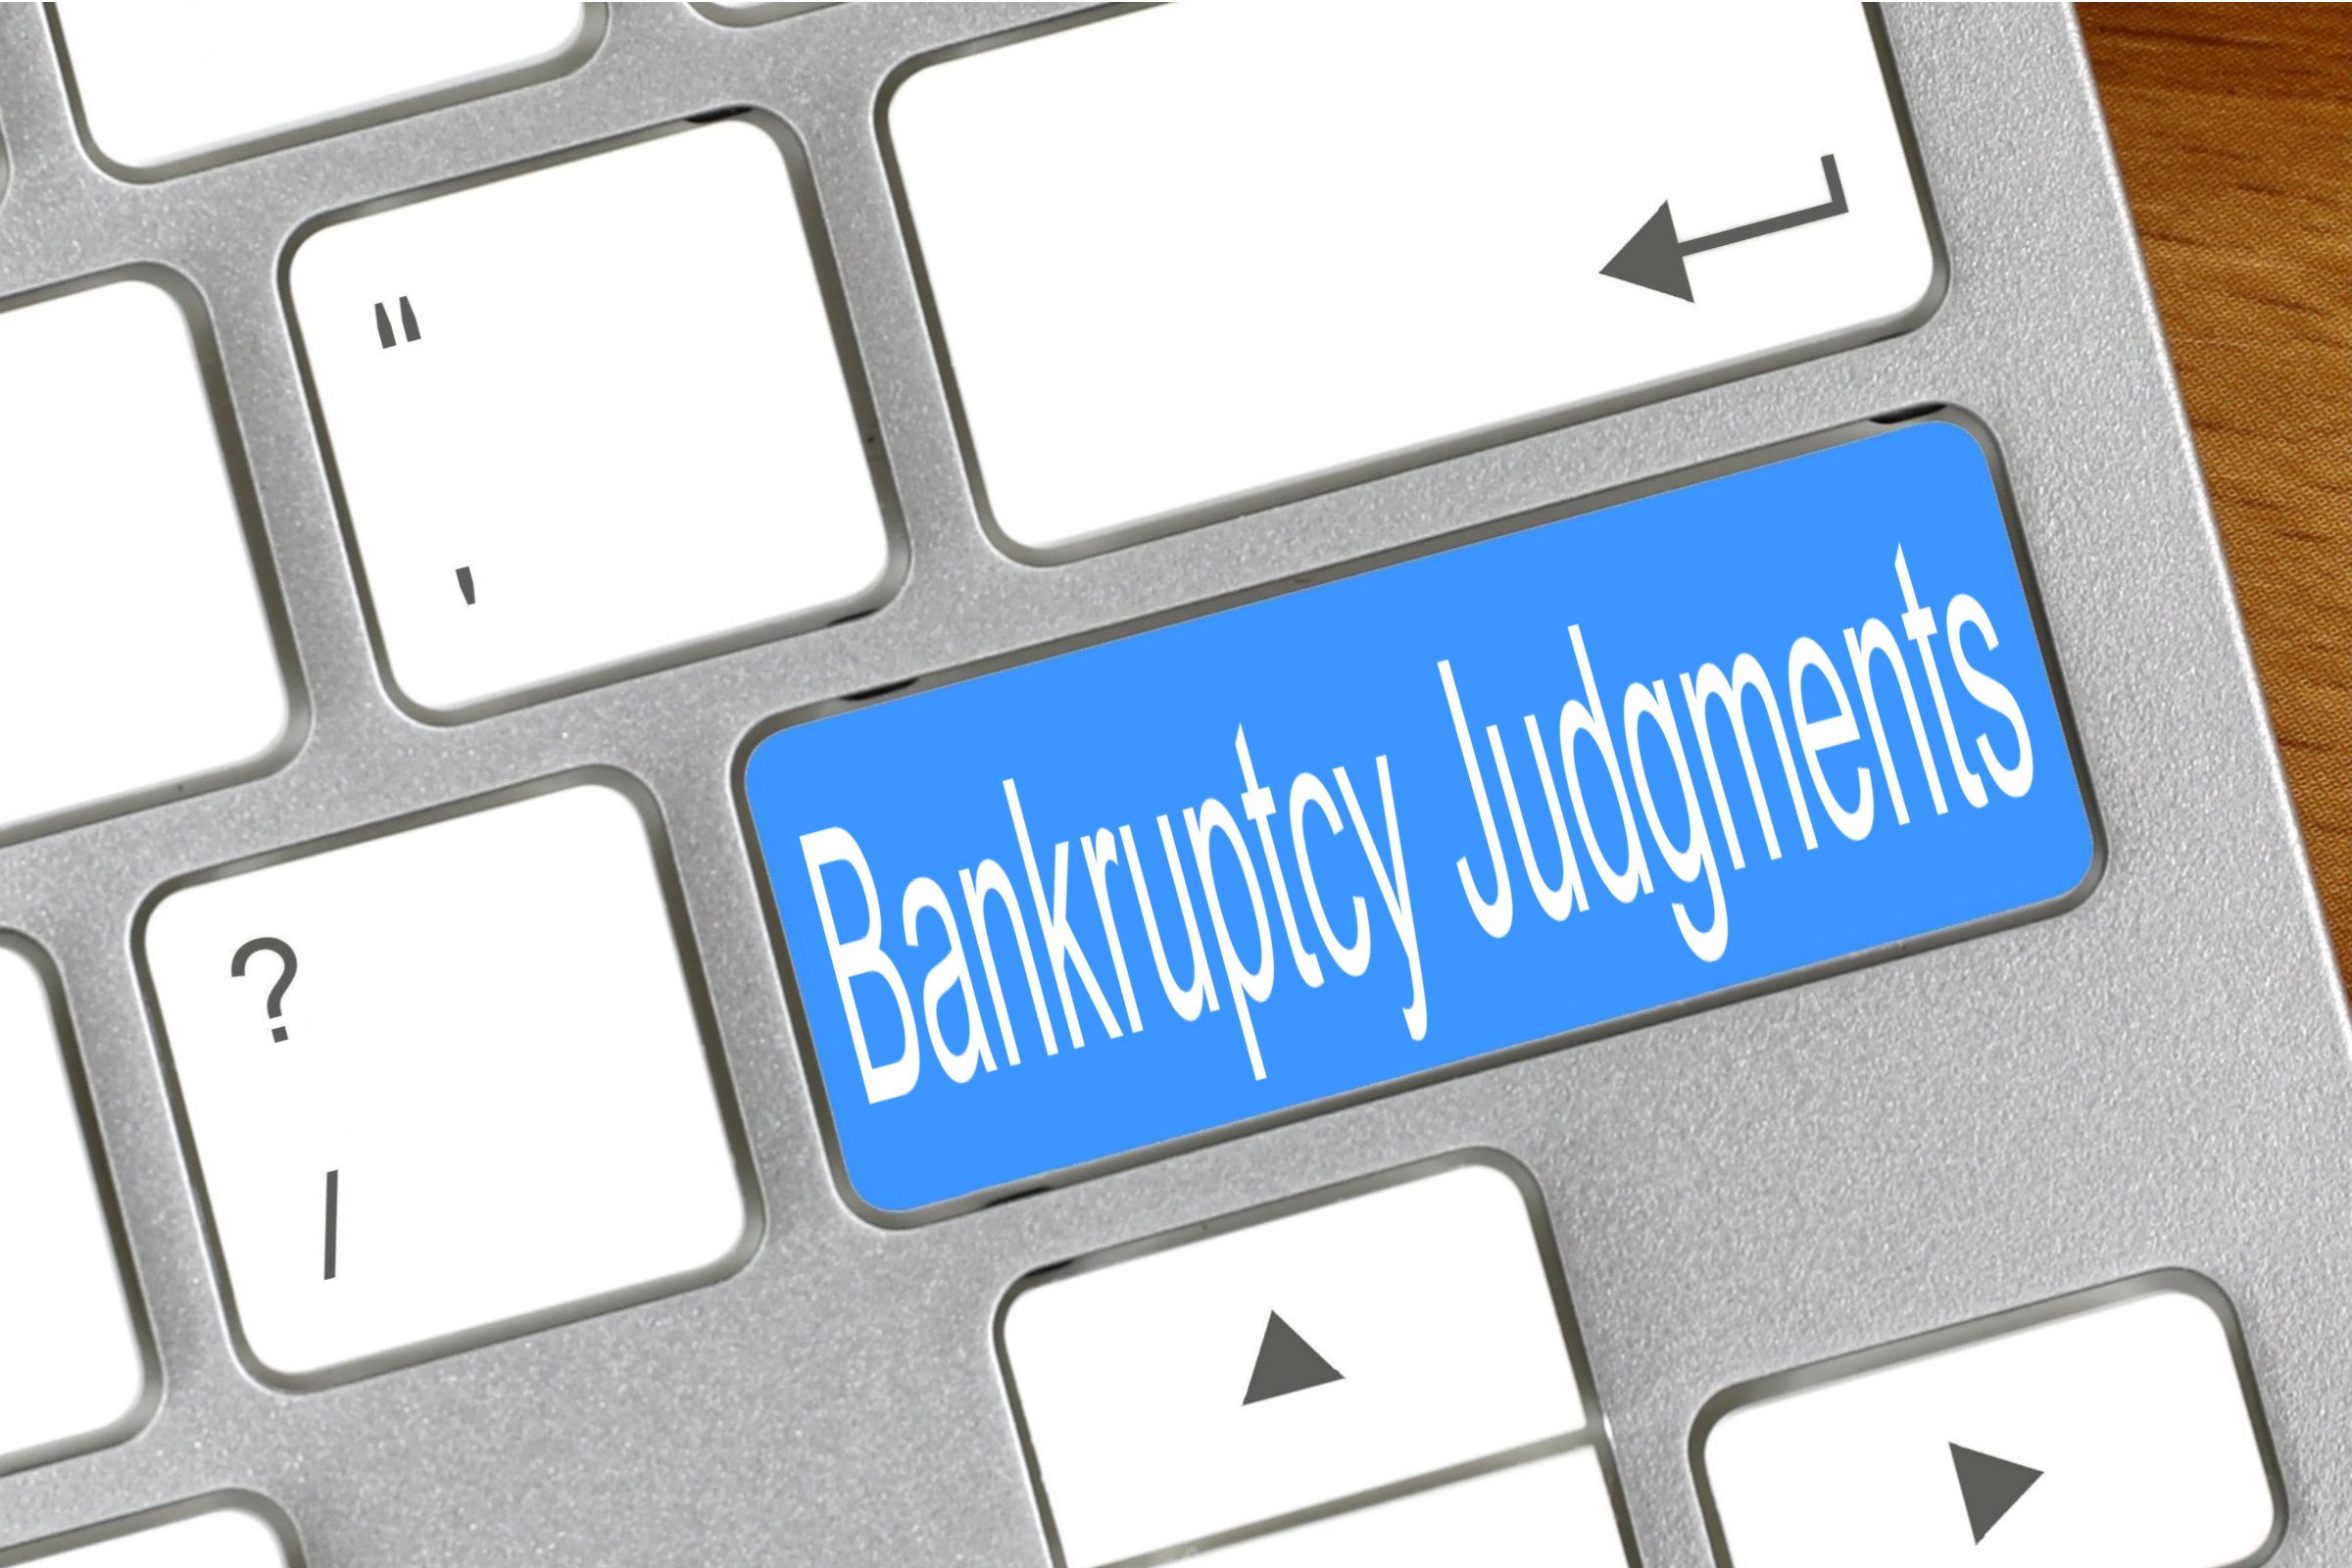 bankruptcy judgments